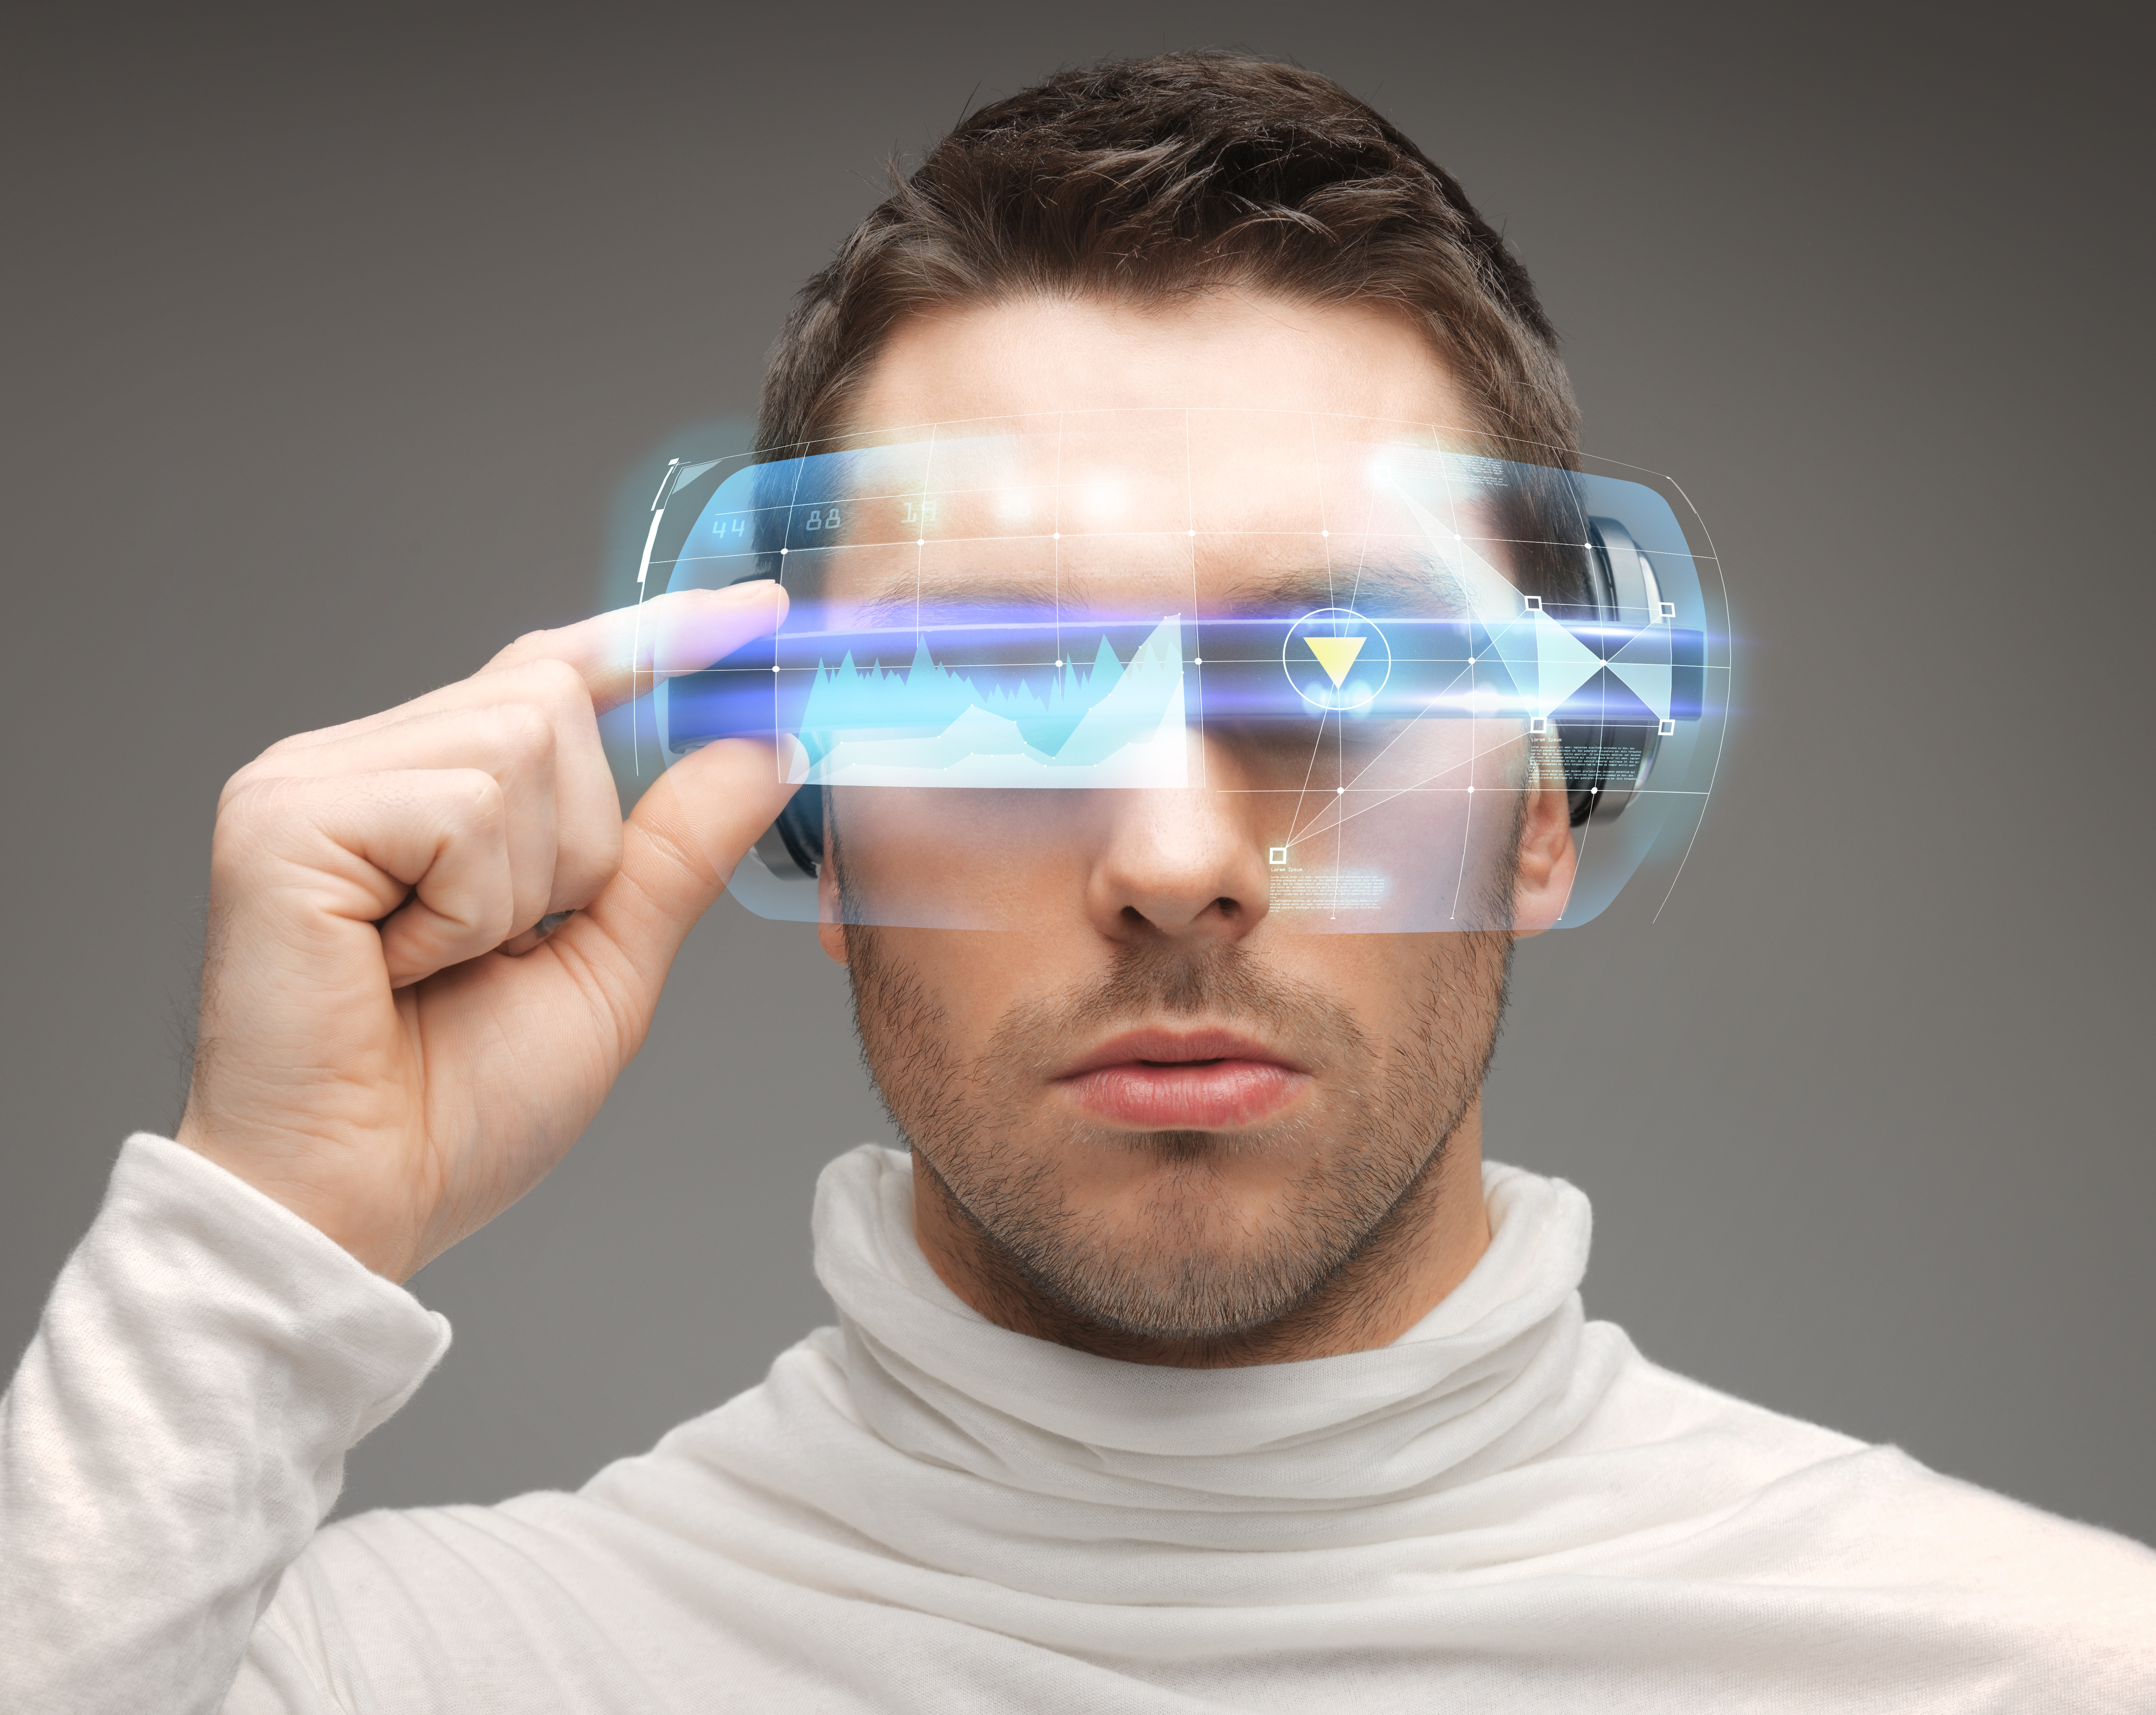 Мужчина будущего 3. Технологичные очки будущего. Технологичный человек. Очки дополненной реальности будущего. Человек в очках дополненной реальности.